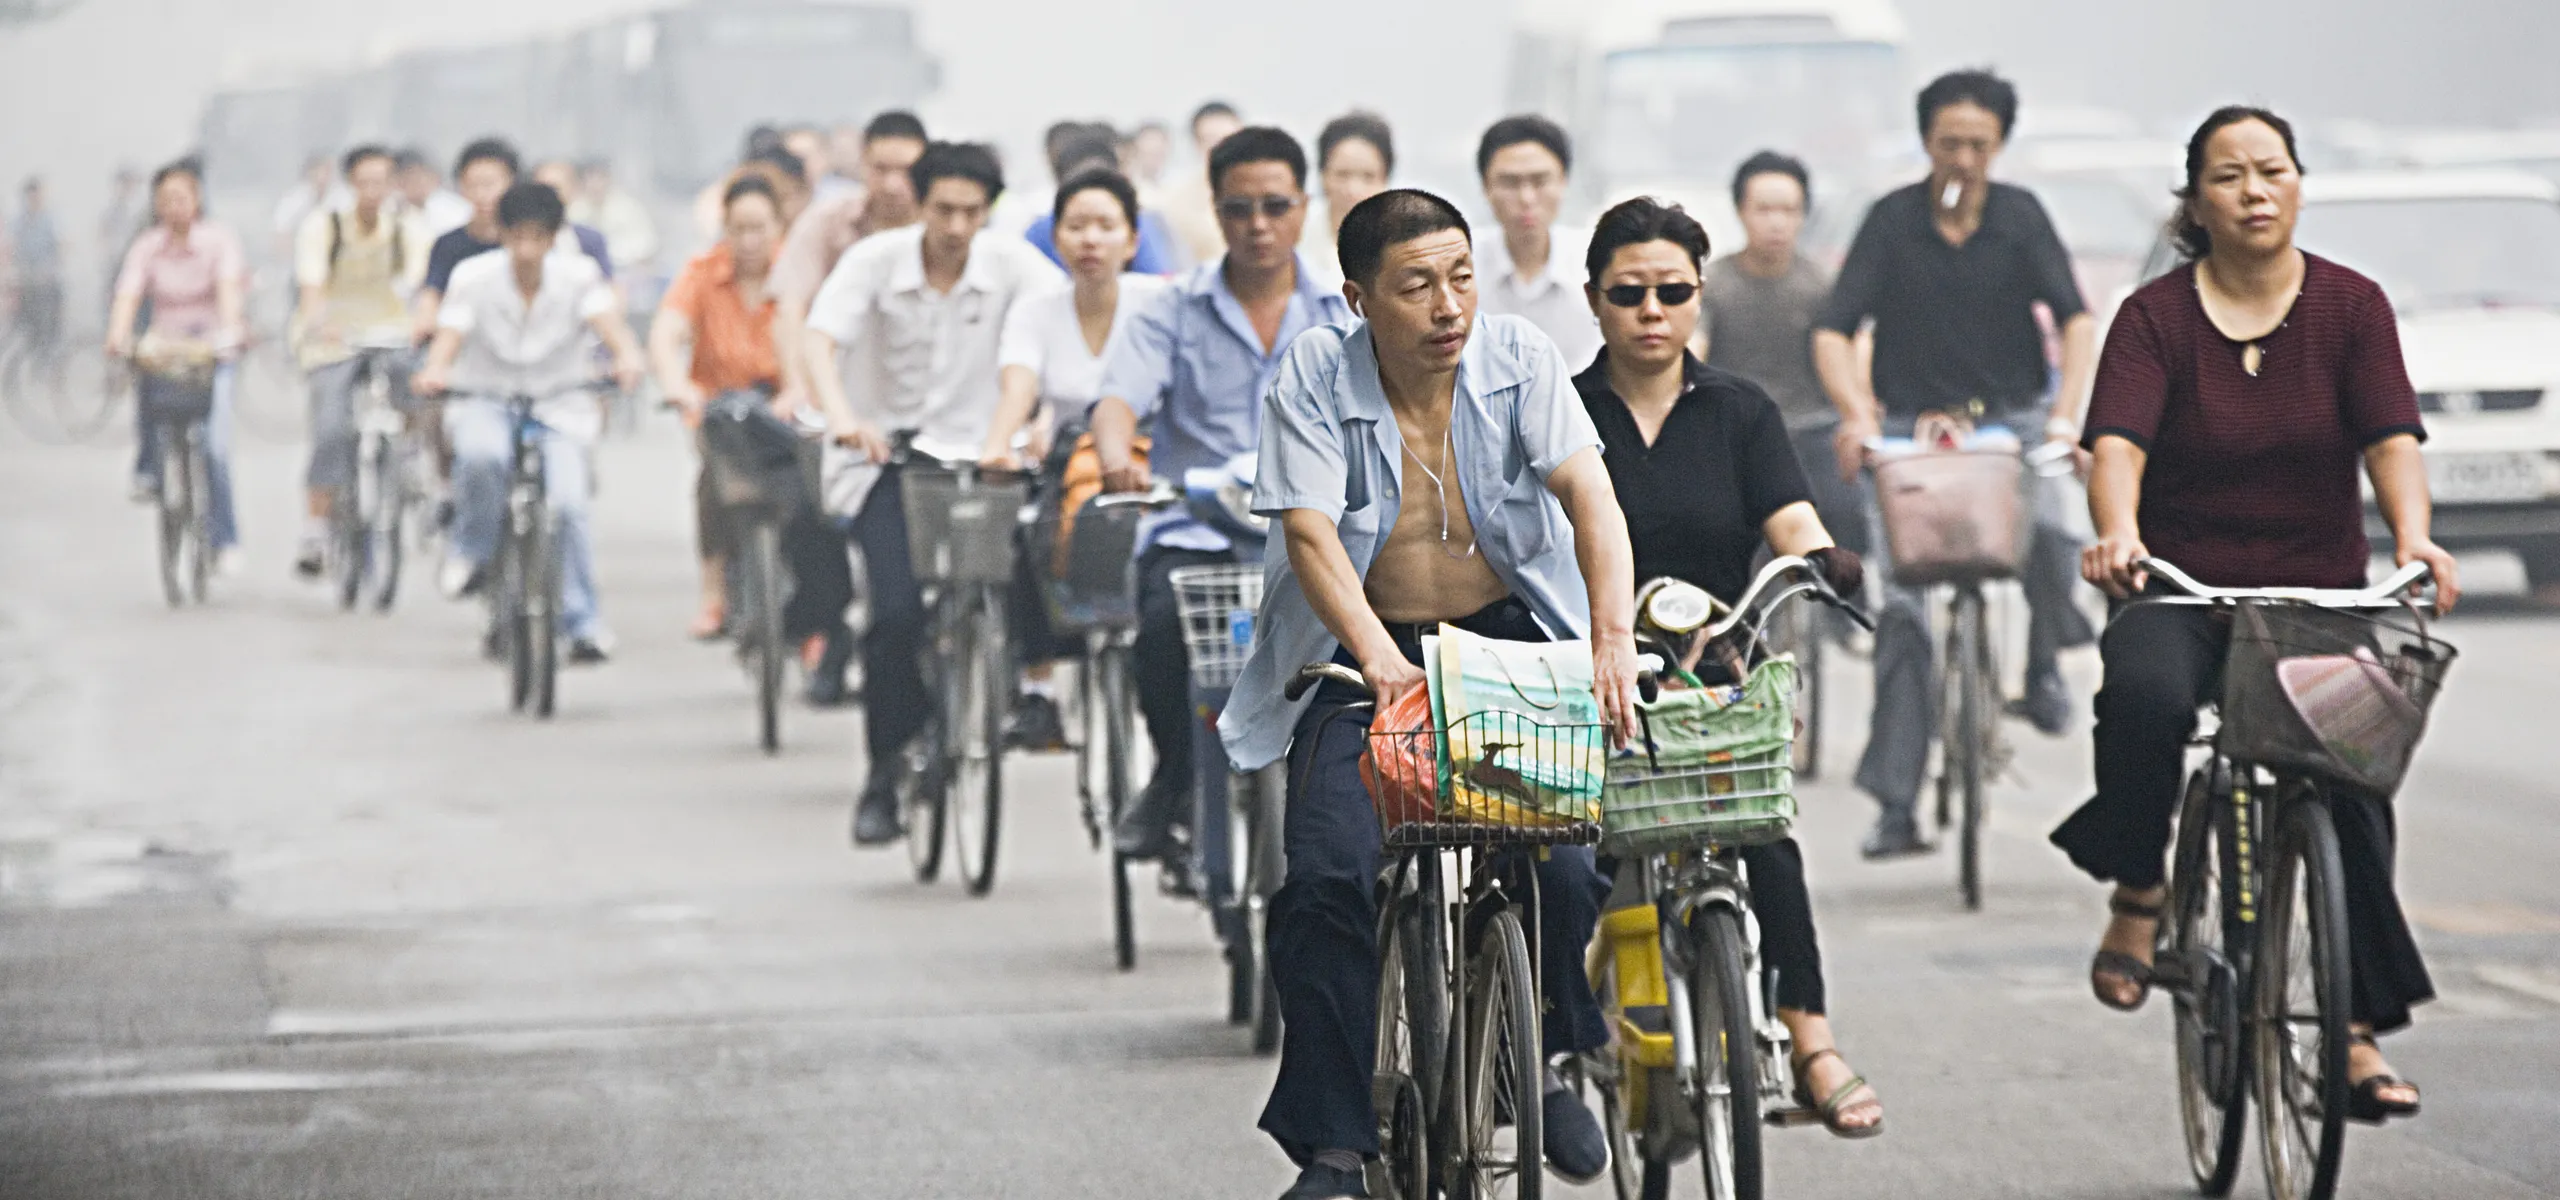 Bike peddlers